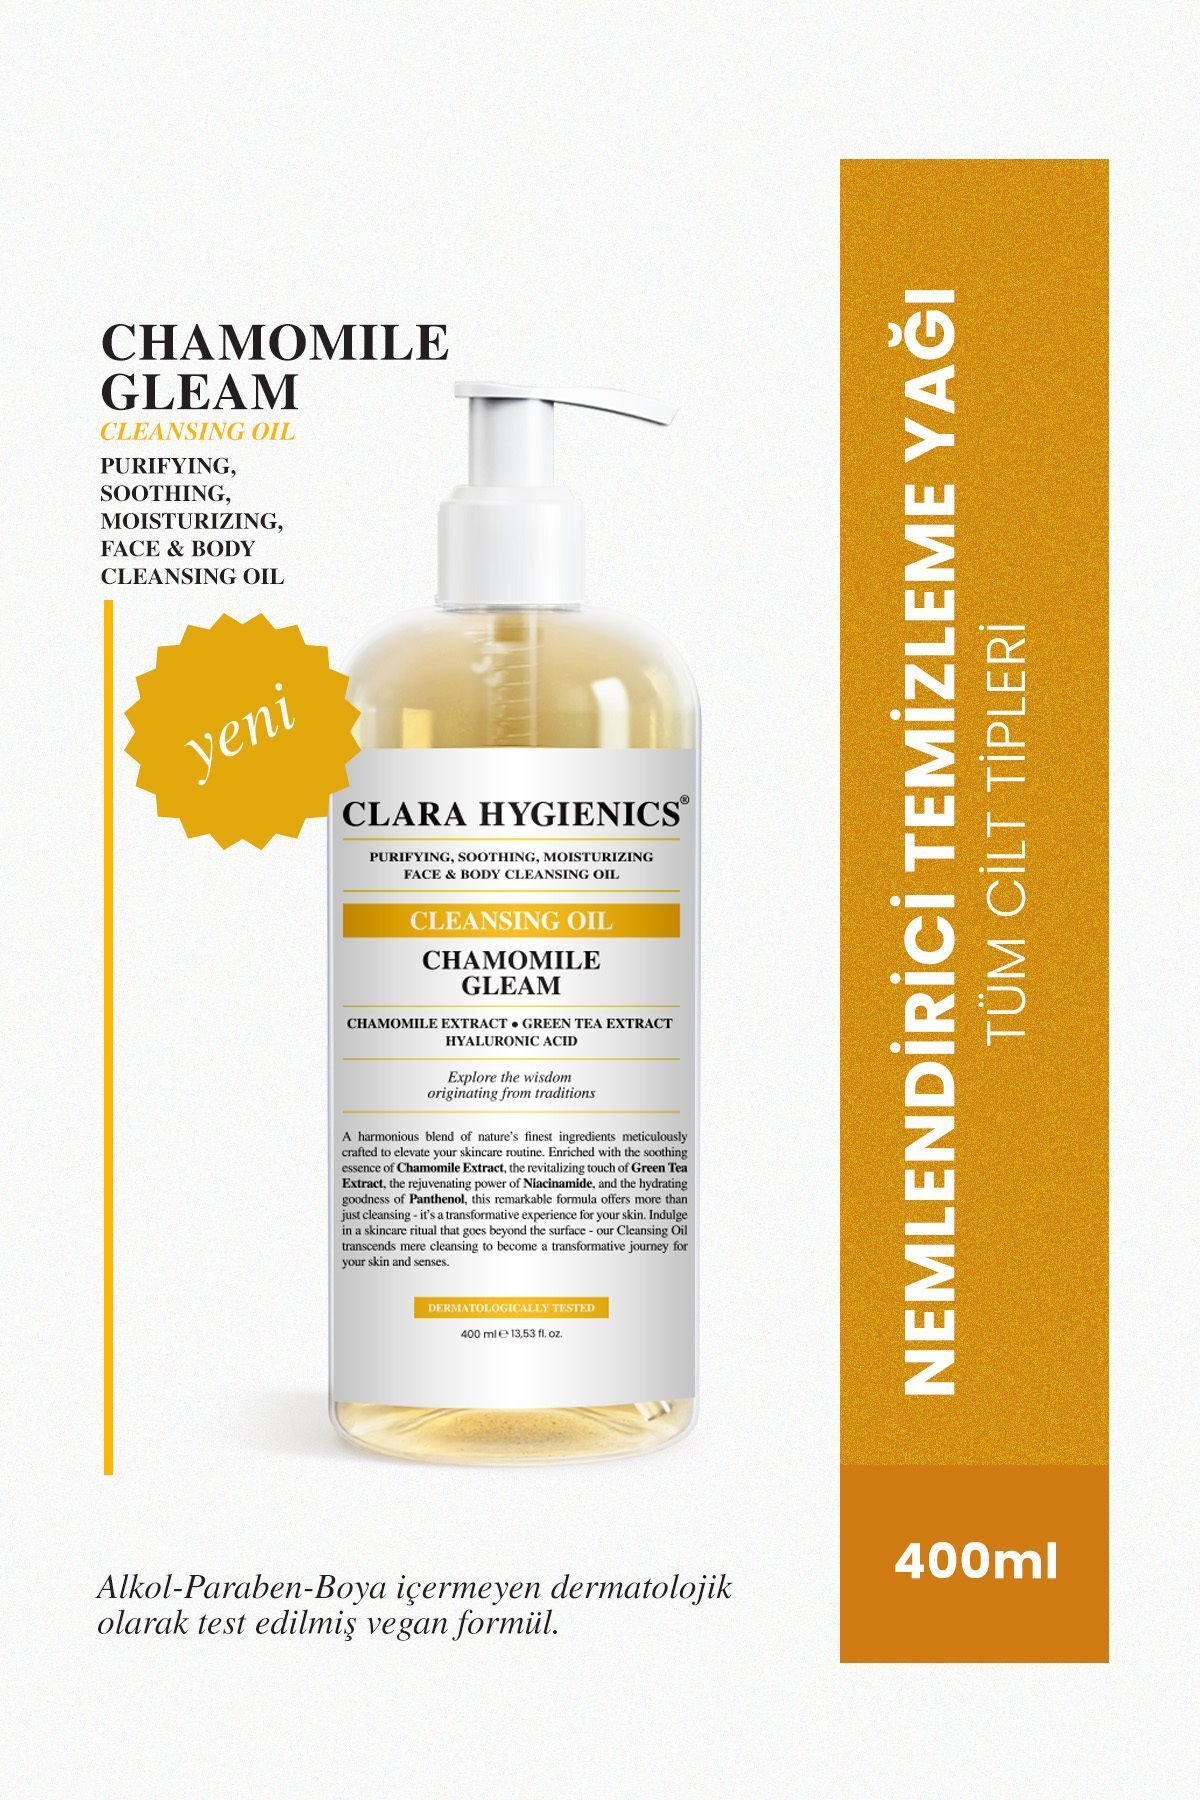 Clara Hygienics Chamomile Gleam Arındırıcı Makyaj Temizleyici Yüz Ve Vücut Temizleme Yağı 400ml Vegan Yağ Bazlı